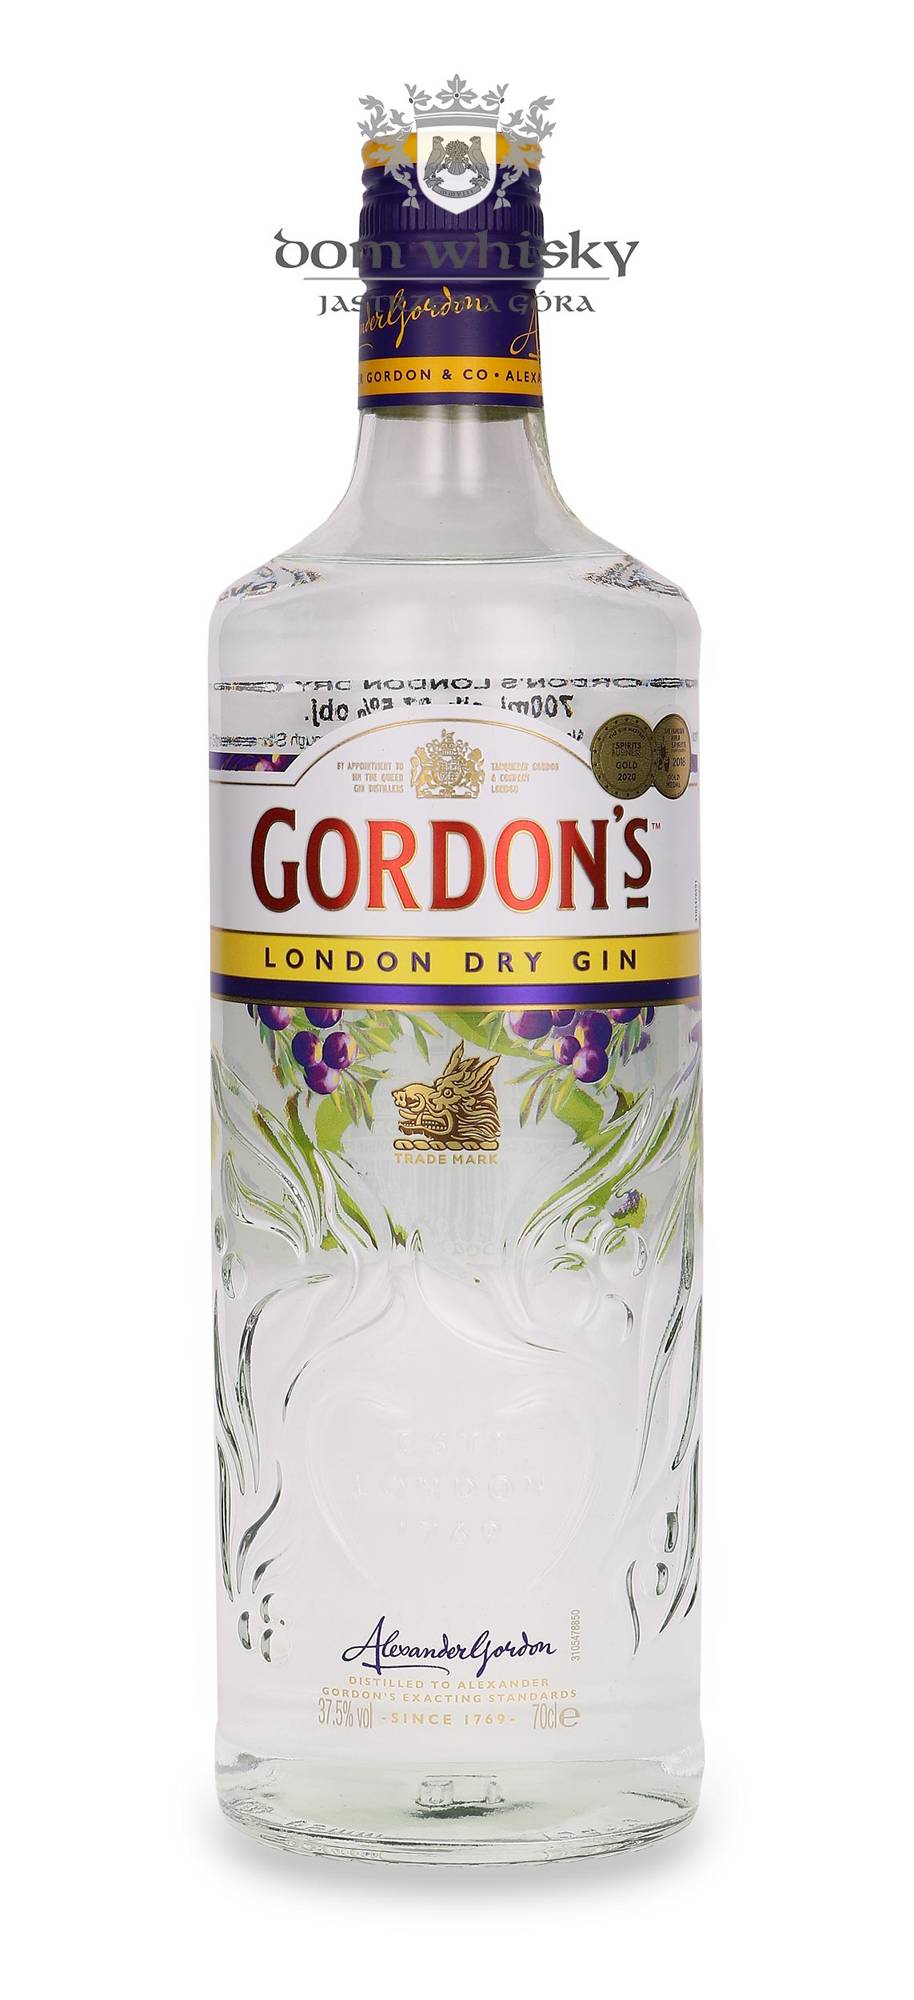 London Dry Gin 37,5%Vol.